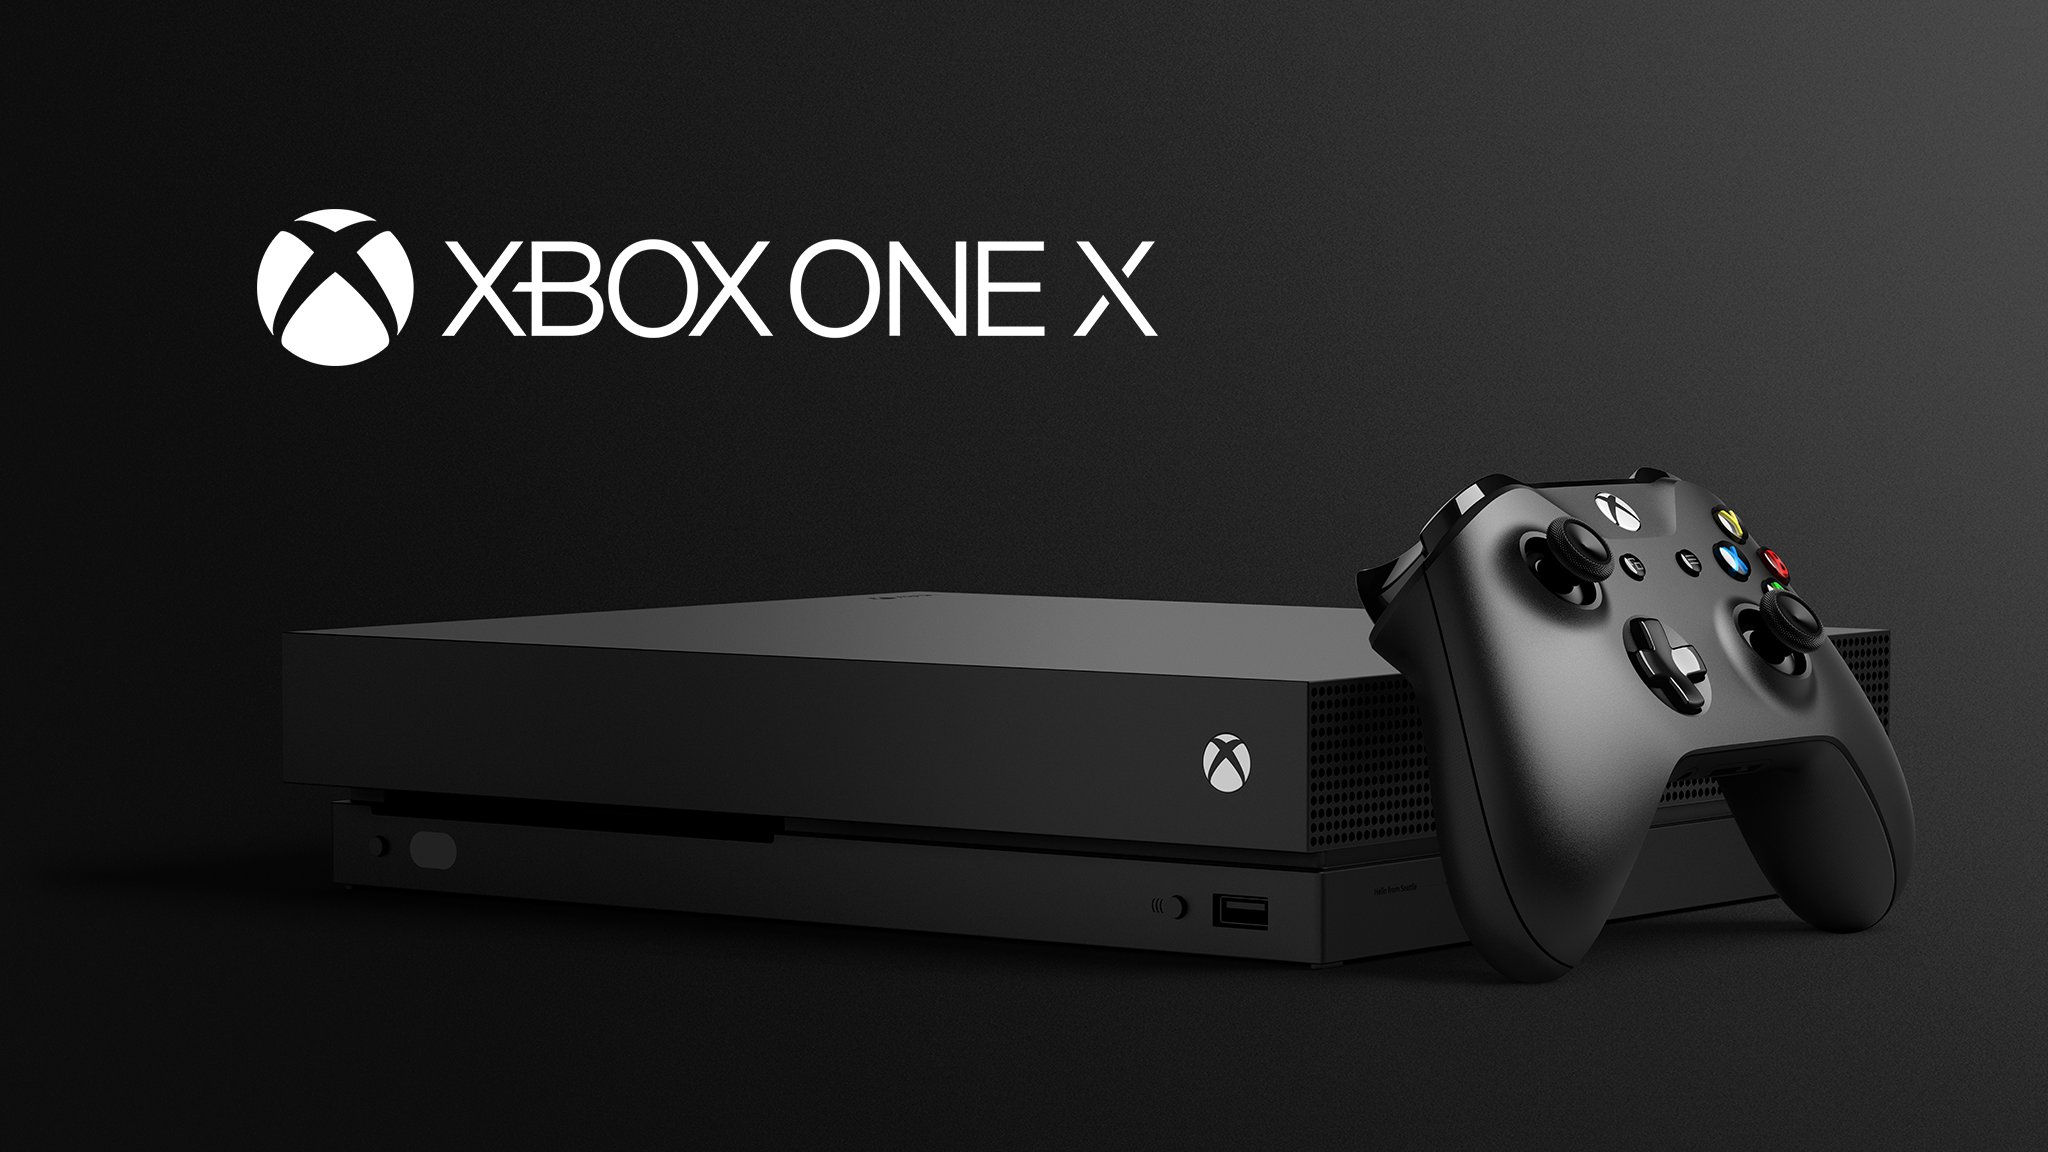 Vale a pena comprar um Xbox One Fat, S ou X, em 2023?